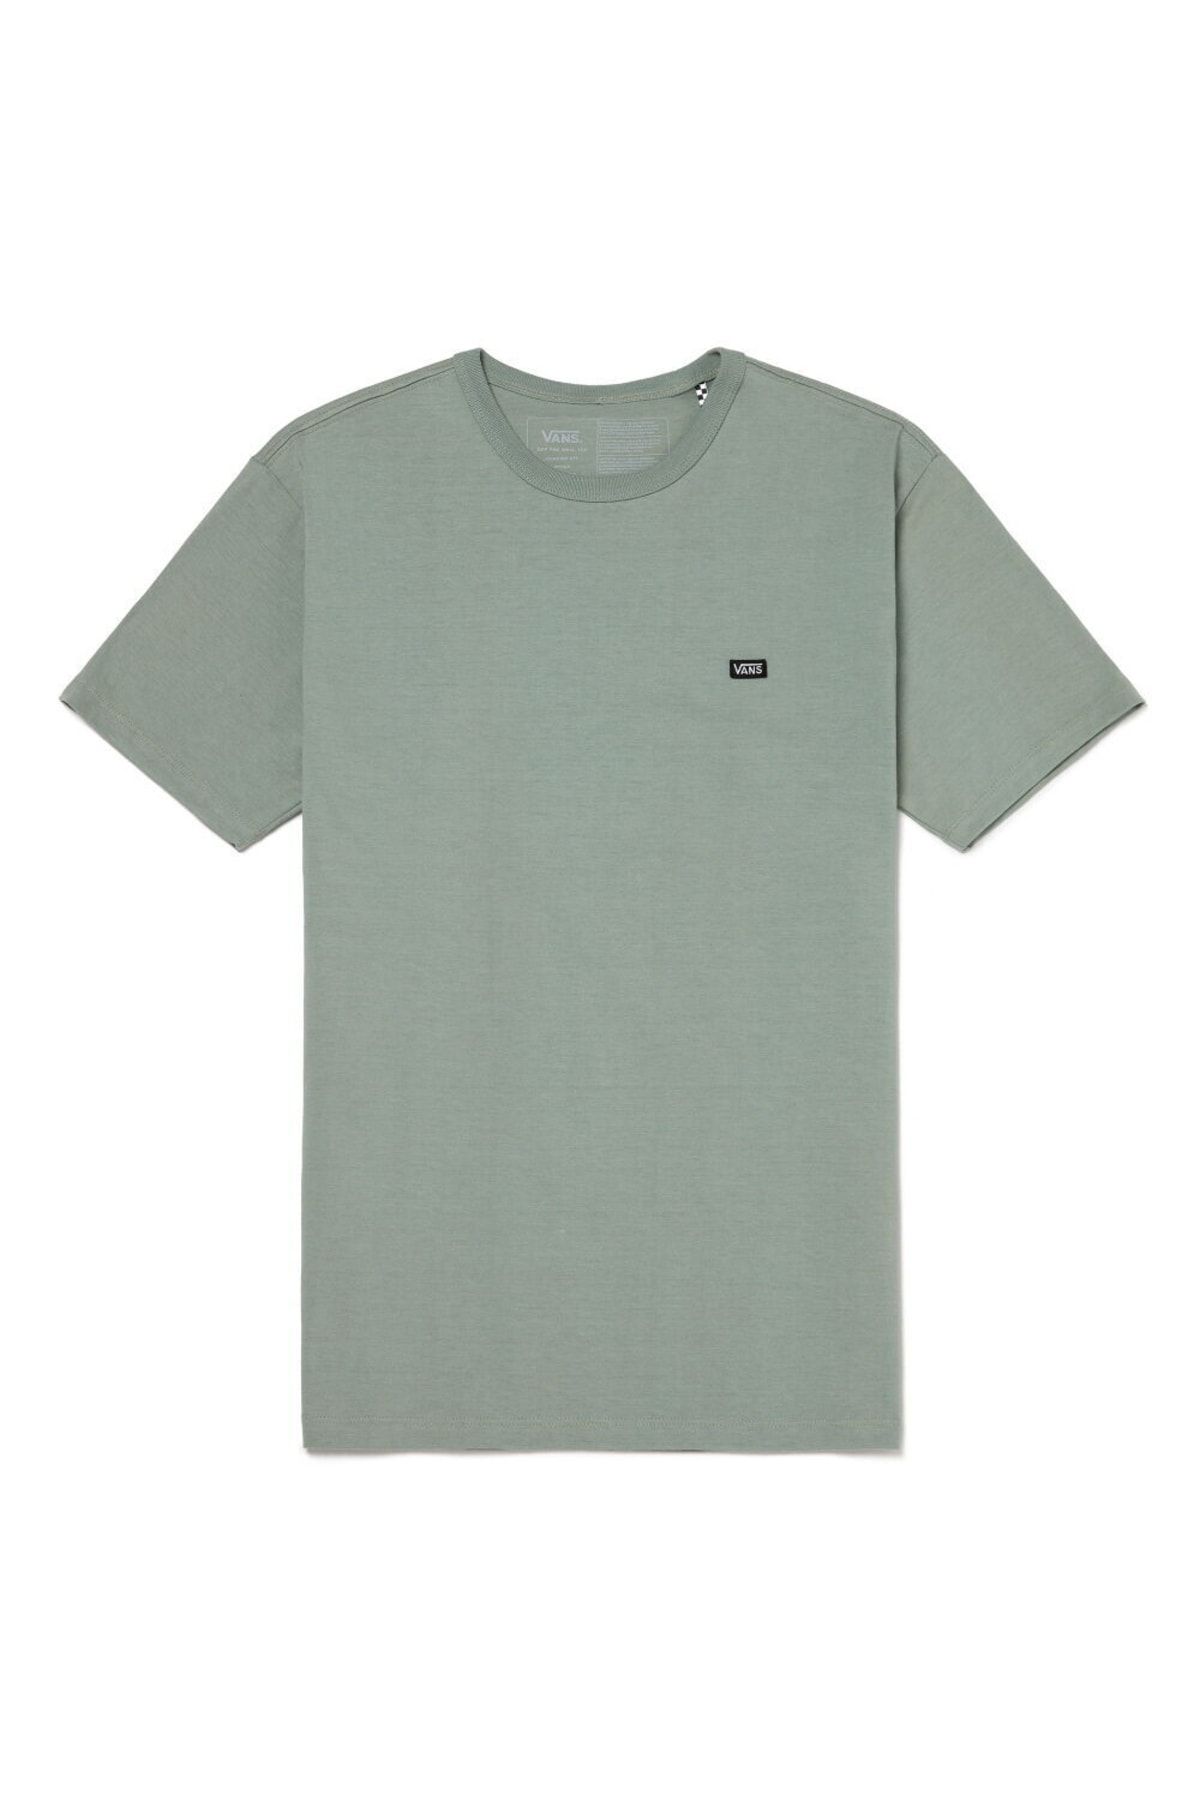 تی شرت سبز یقه خدمه طرح چاپی مدل ساده آستین کوتاه مردانه ونس Vans (برند آمریکا)